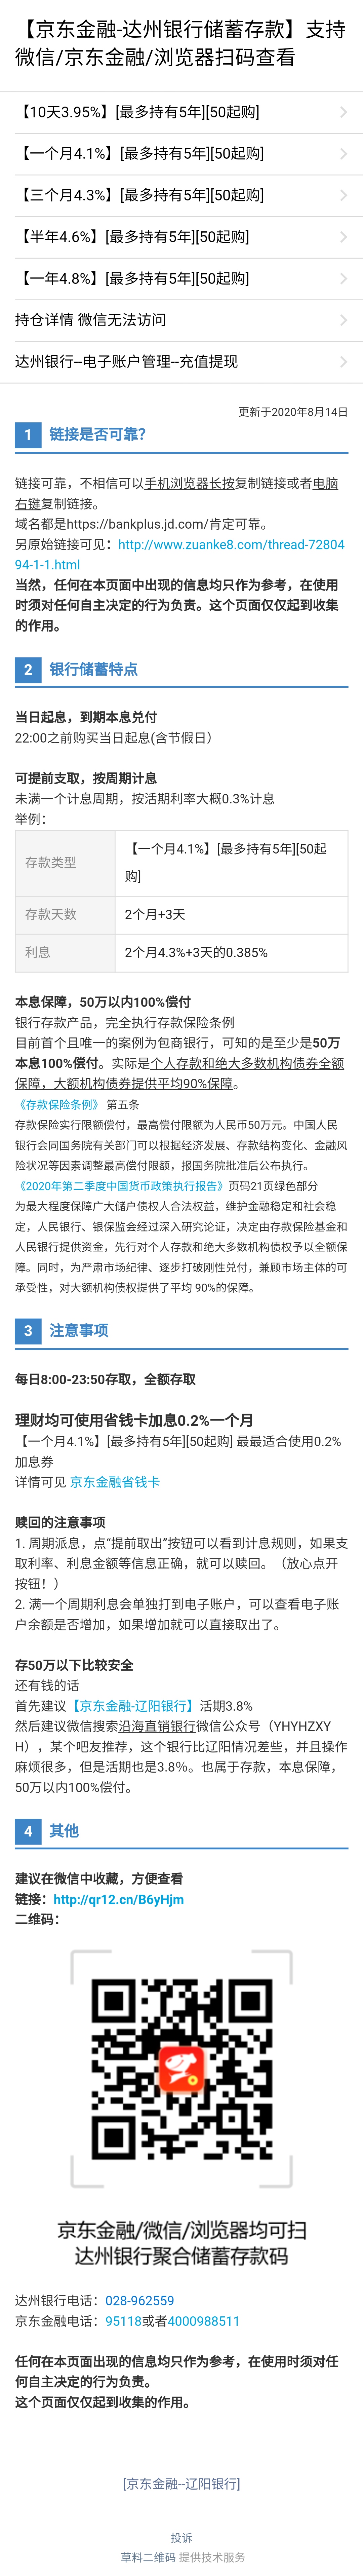 线报-「达州银行」线报-「10天3.95%」京东金融中和辽阳银行差不多的高息-惠小助(52huixz.com)